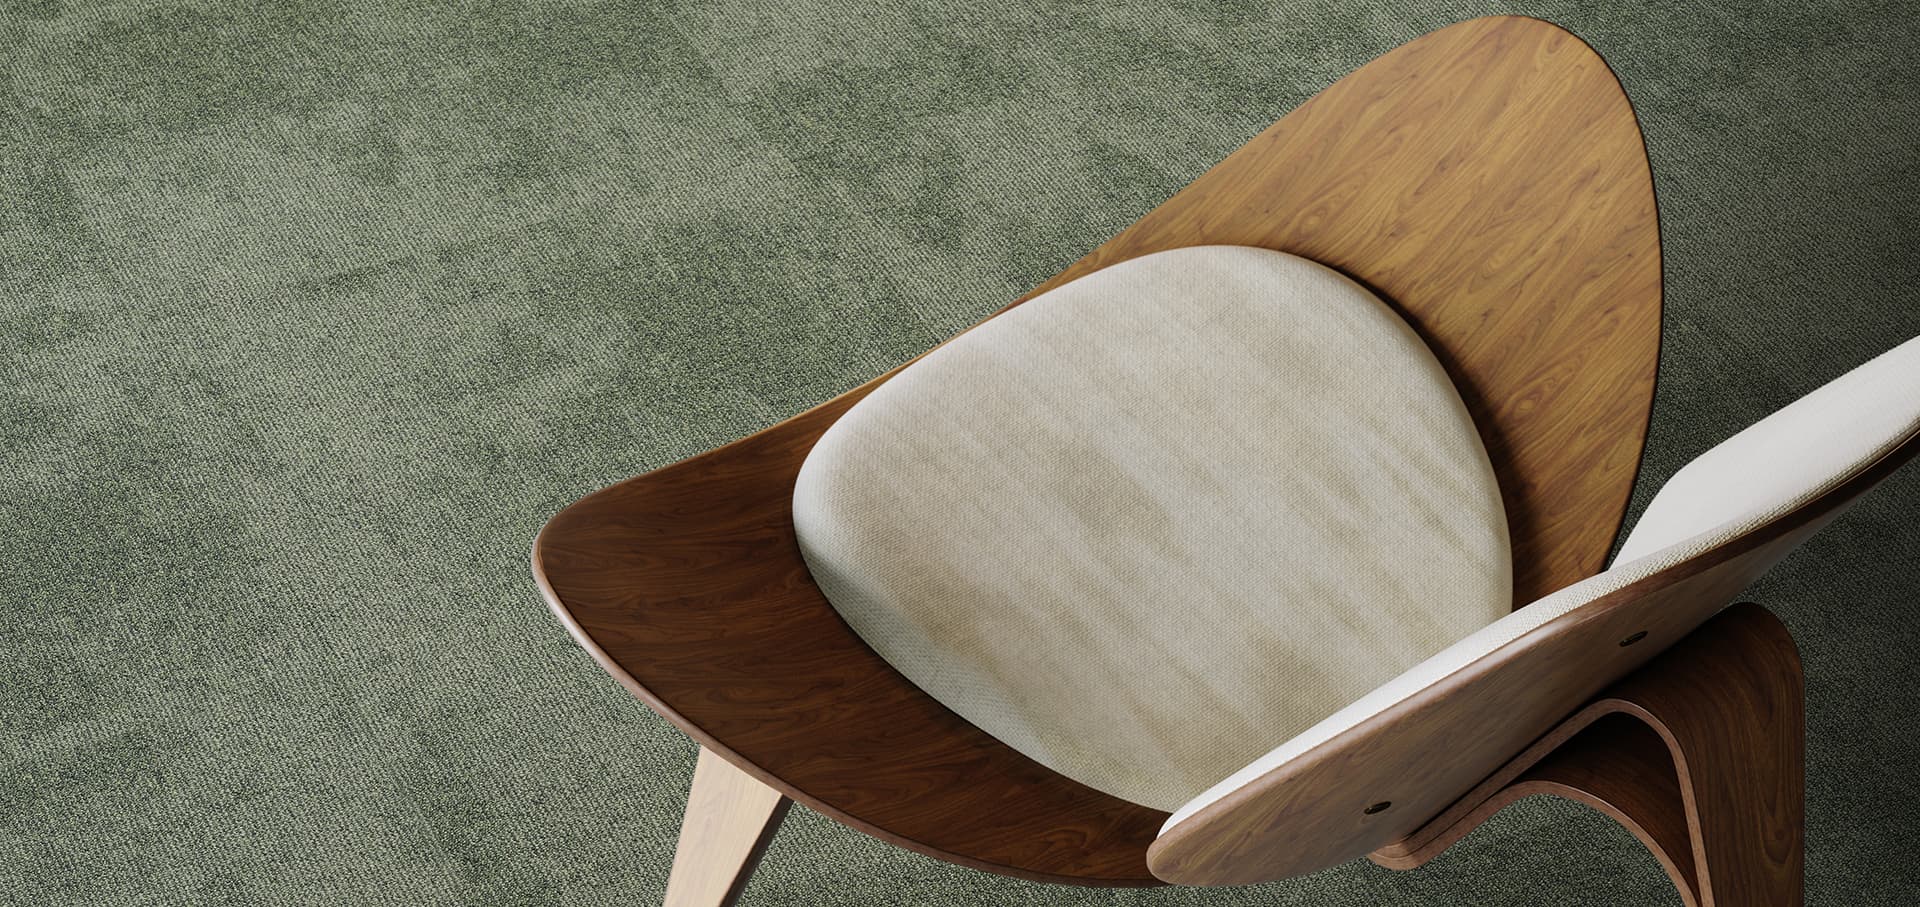 Płytki dywanowe z designerskim krzesłem